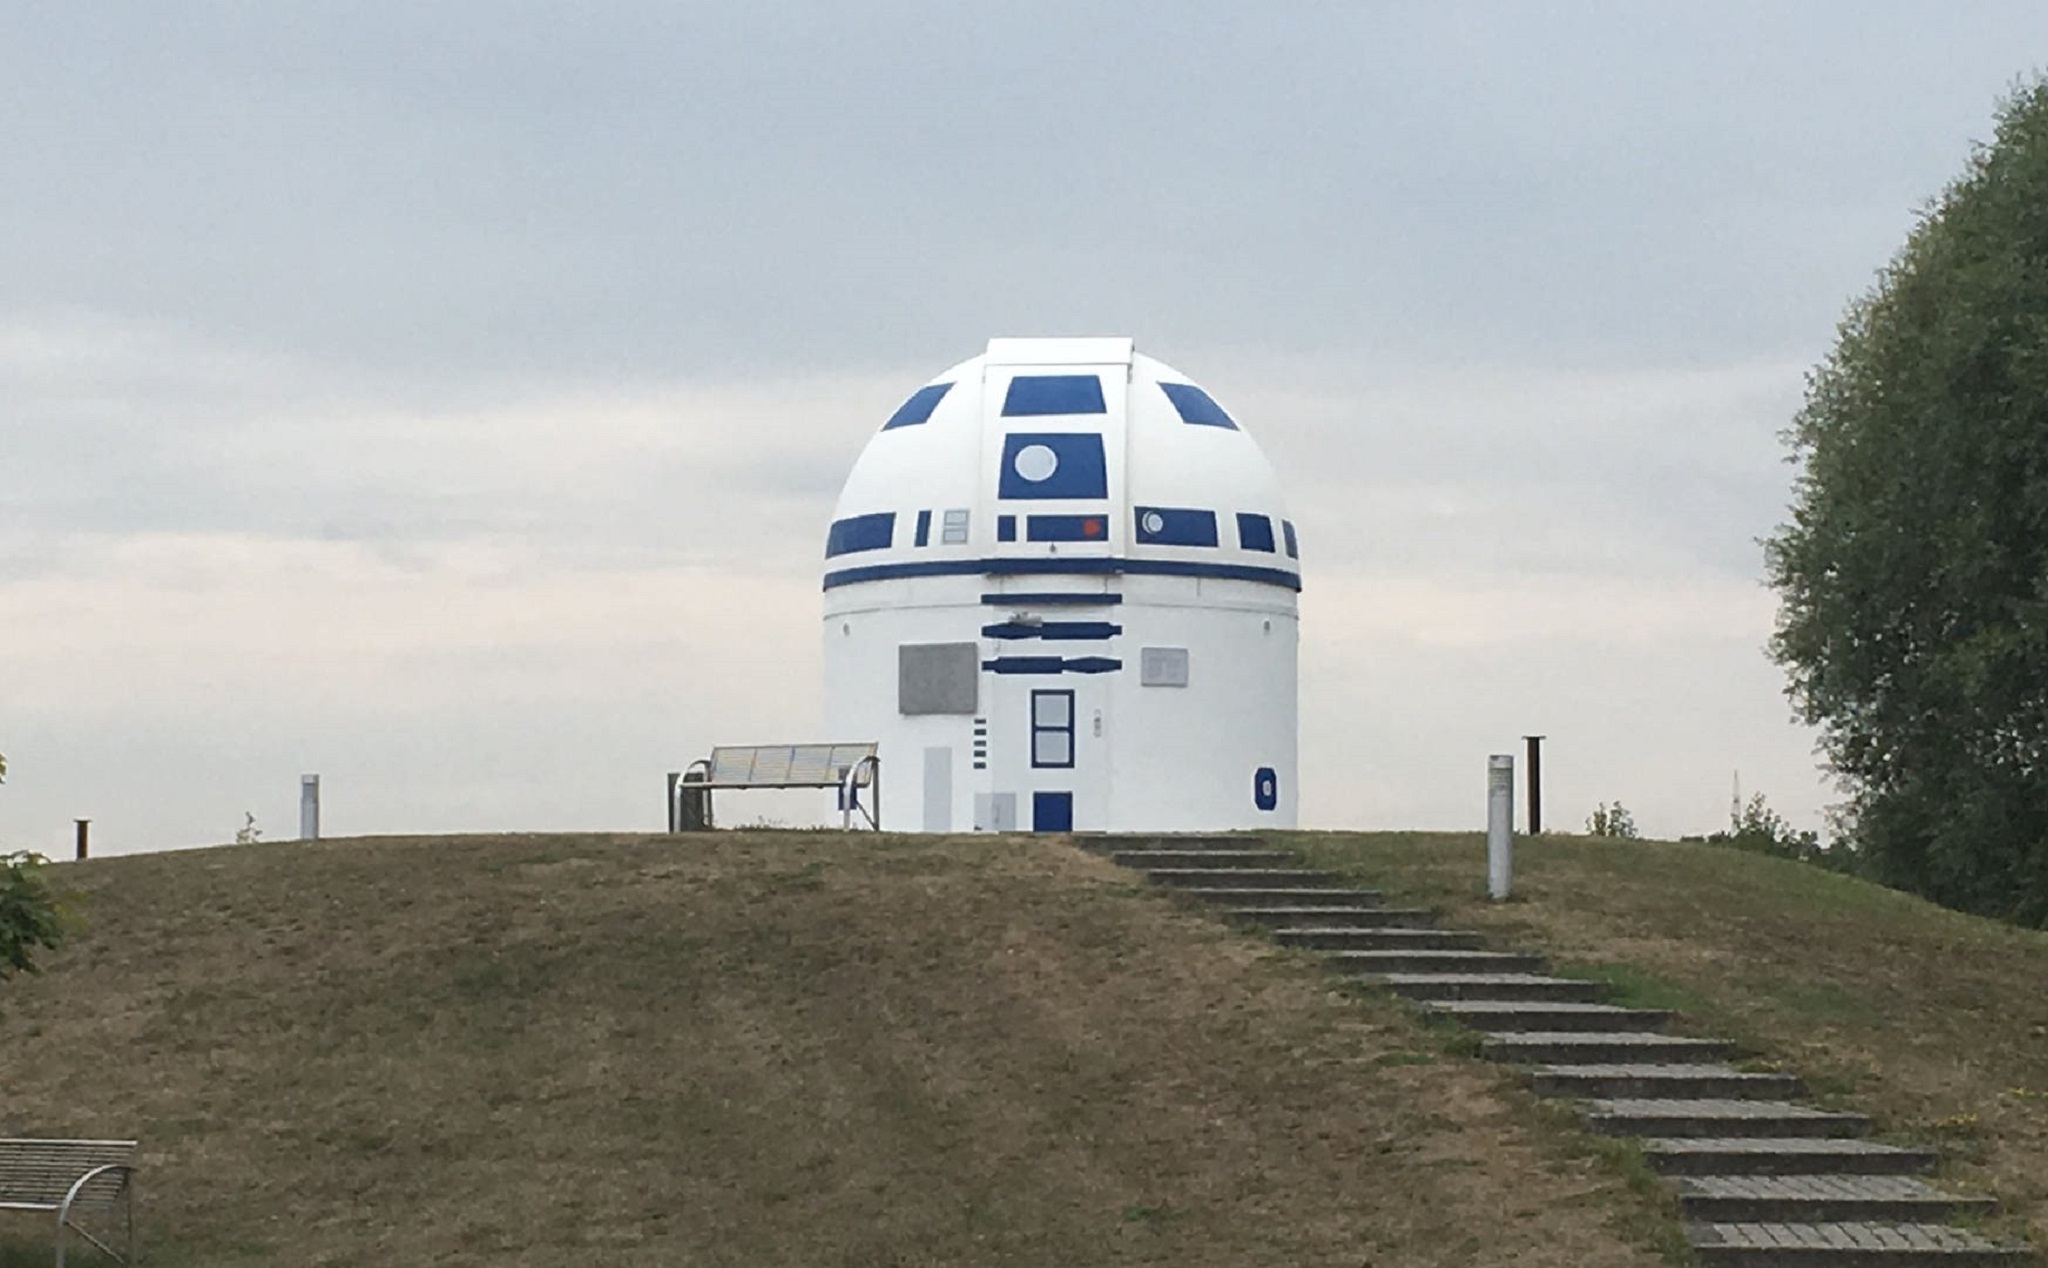 Giáo sư người Đức, fan cứng của Star Wars sơn toàn bộ đài thiên văn thành robot R2-D2